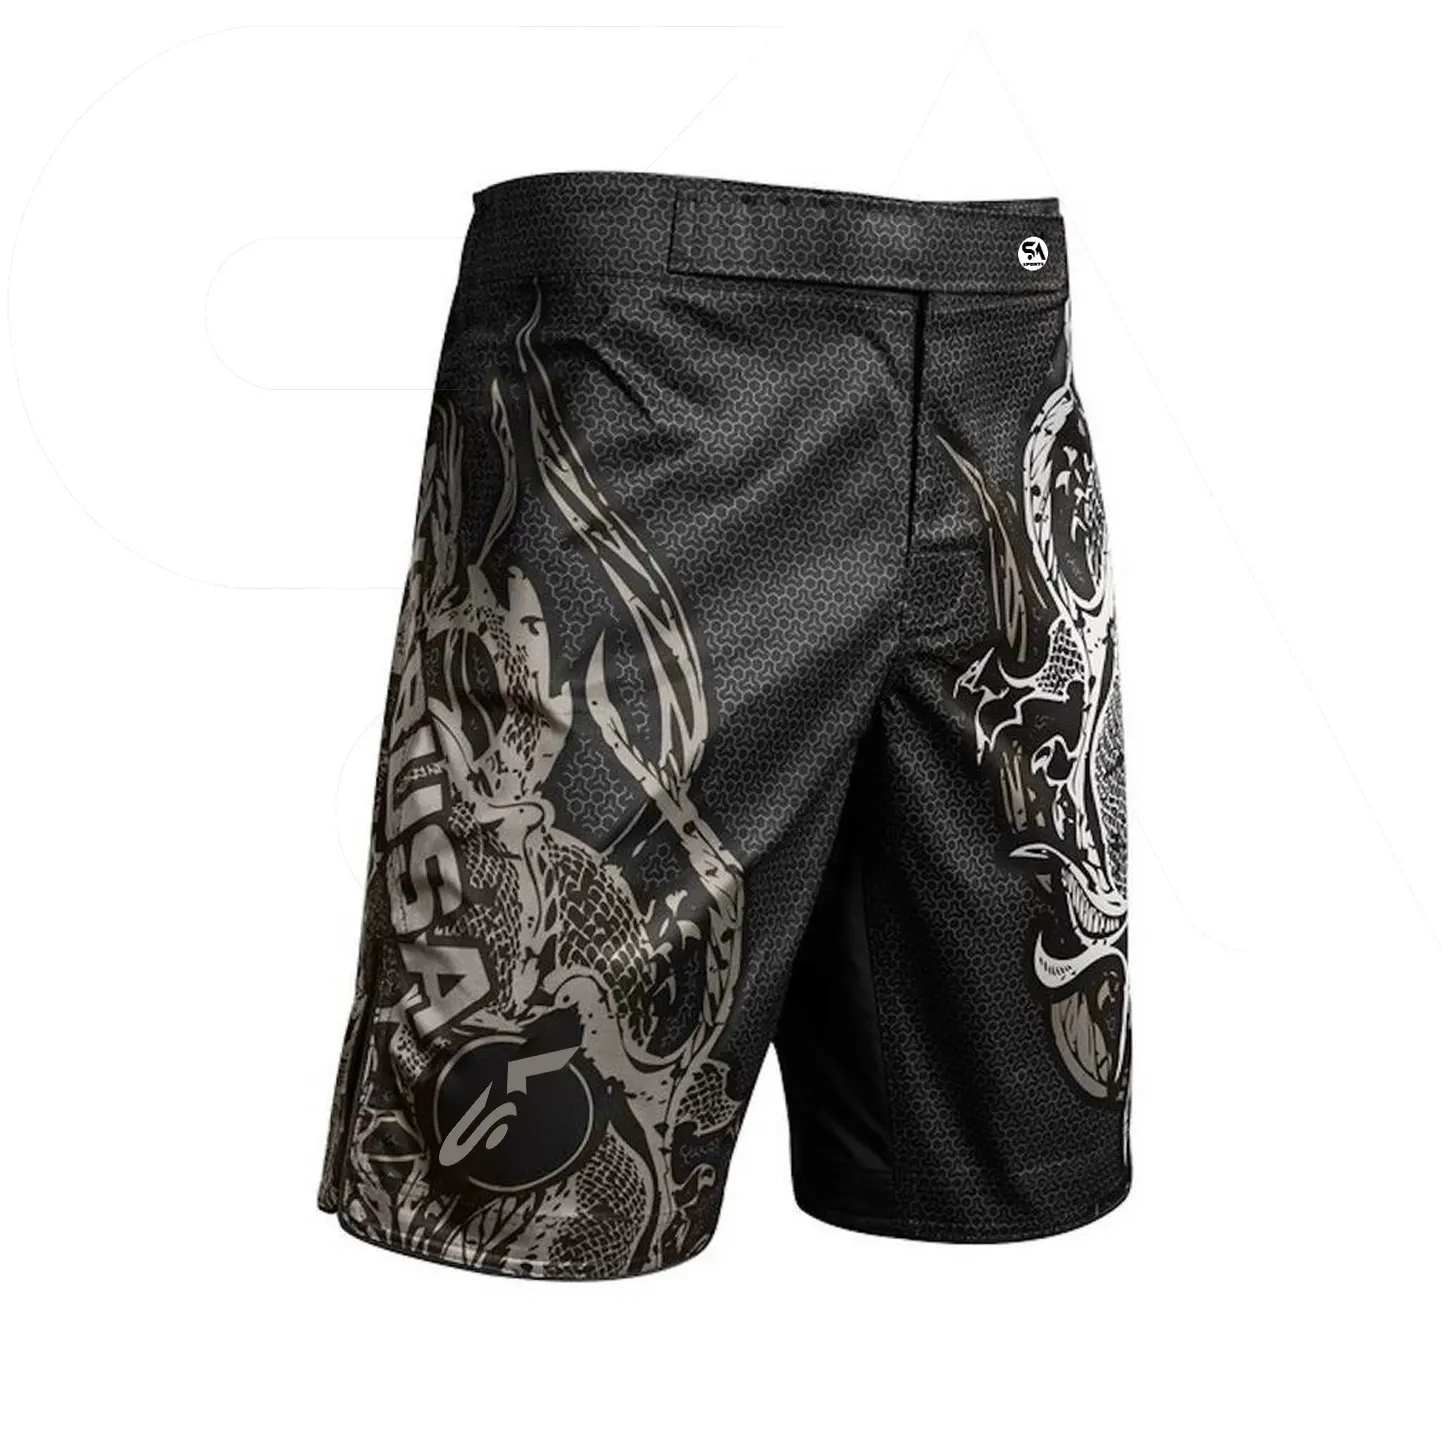 Alta calidad pantalones cortos MMA sublimación hombres es MMA boxeo pantalones cortos de MMA competencia pantalones cortos